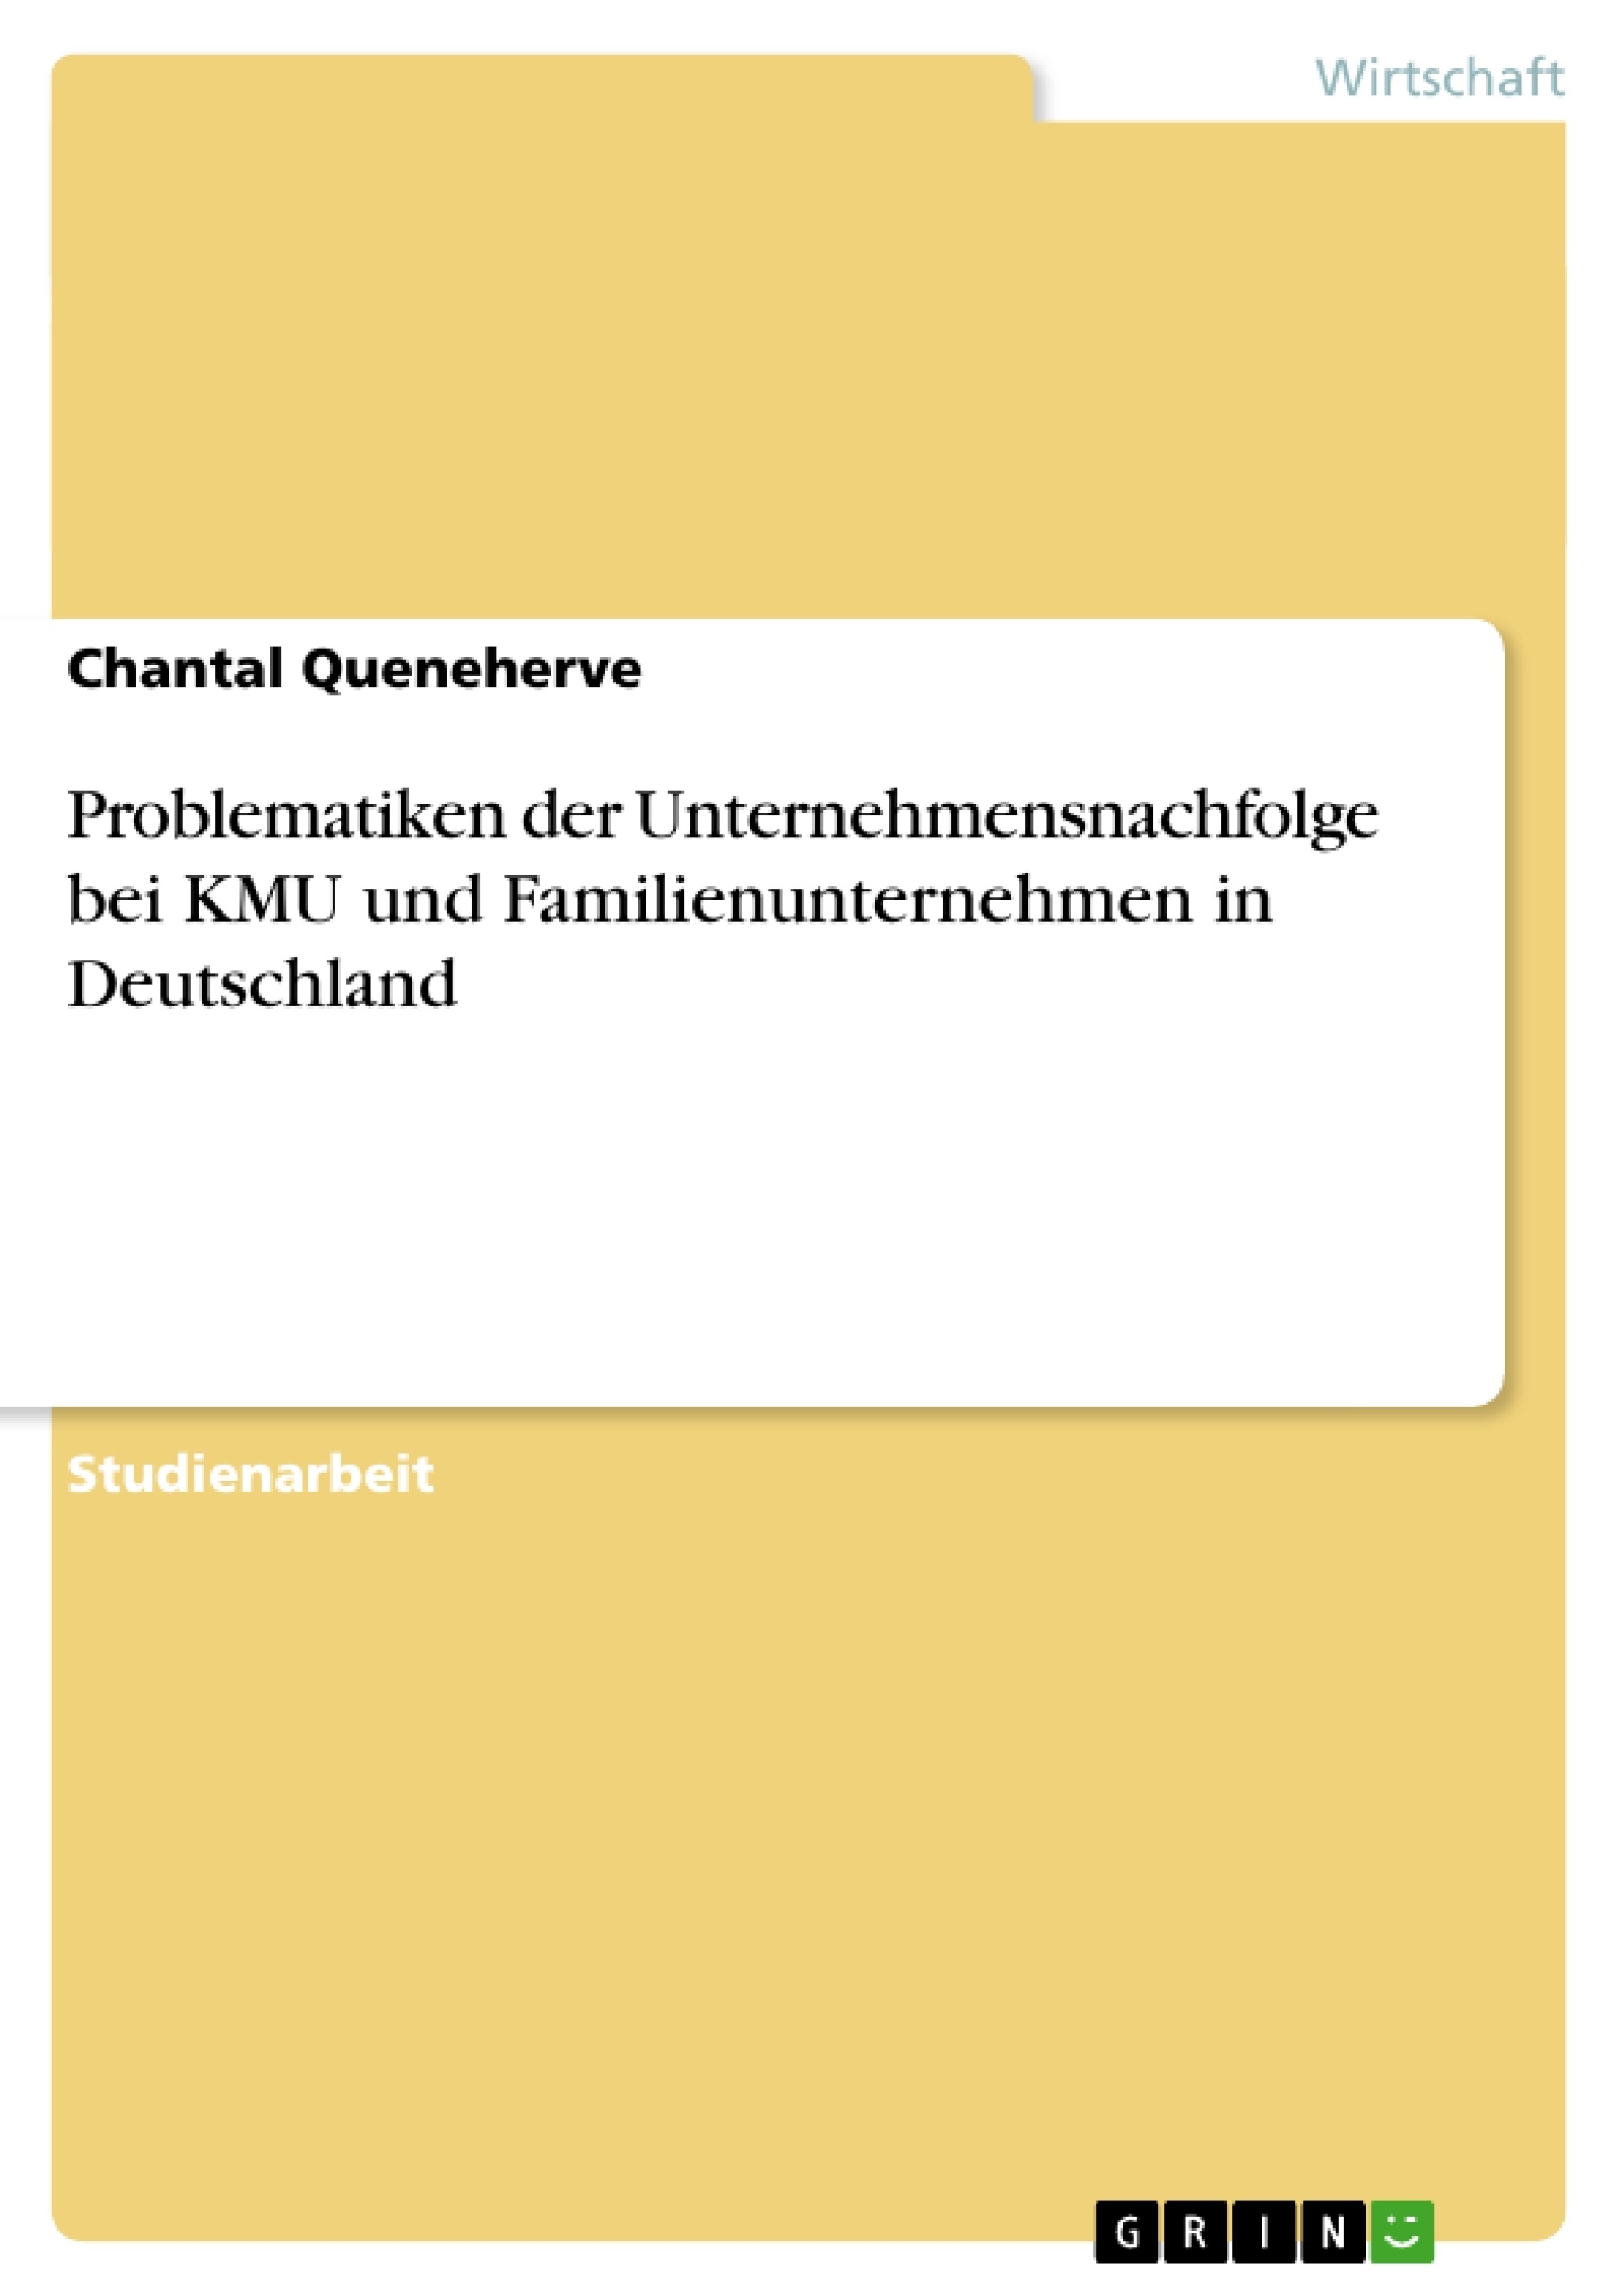 Título: Problematiken der Unternehmensnachfolge bei KMU und Familienunternehmen in Deutschland